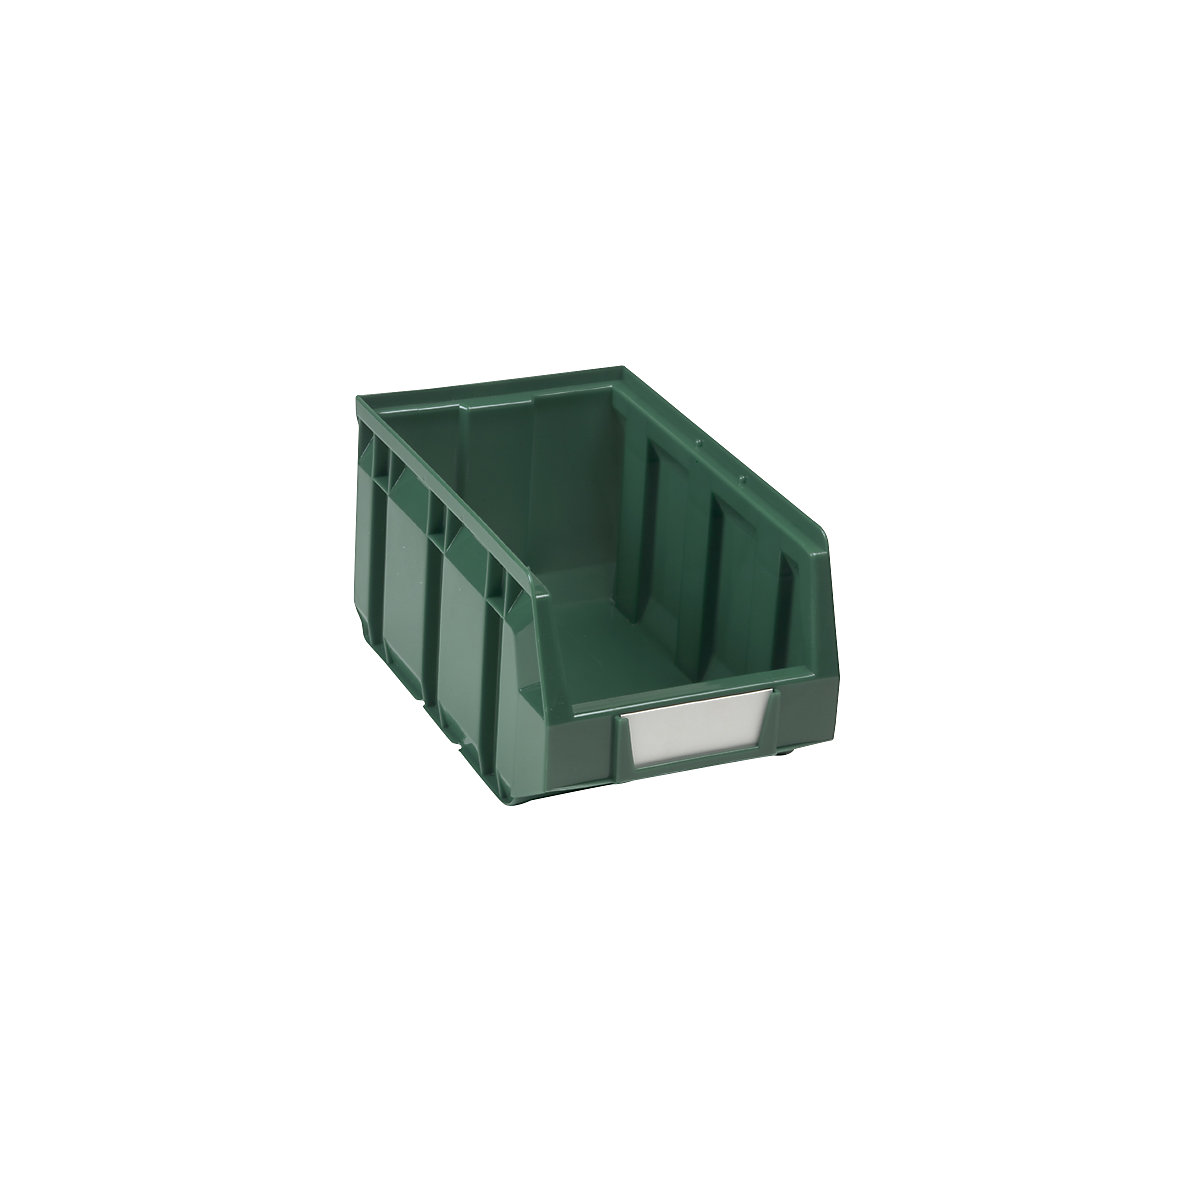 Sichtlagerkasten aus Polyethylen, LxBxH 237 x 144 x 123 mm, grün, VE 38 Stk-7